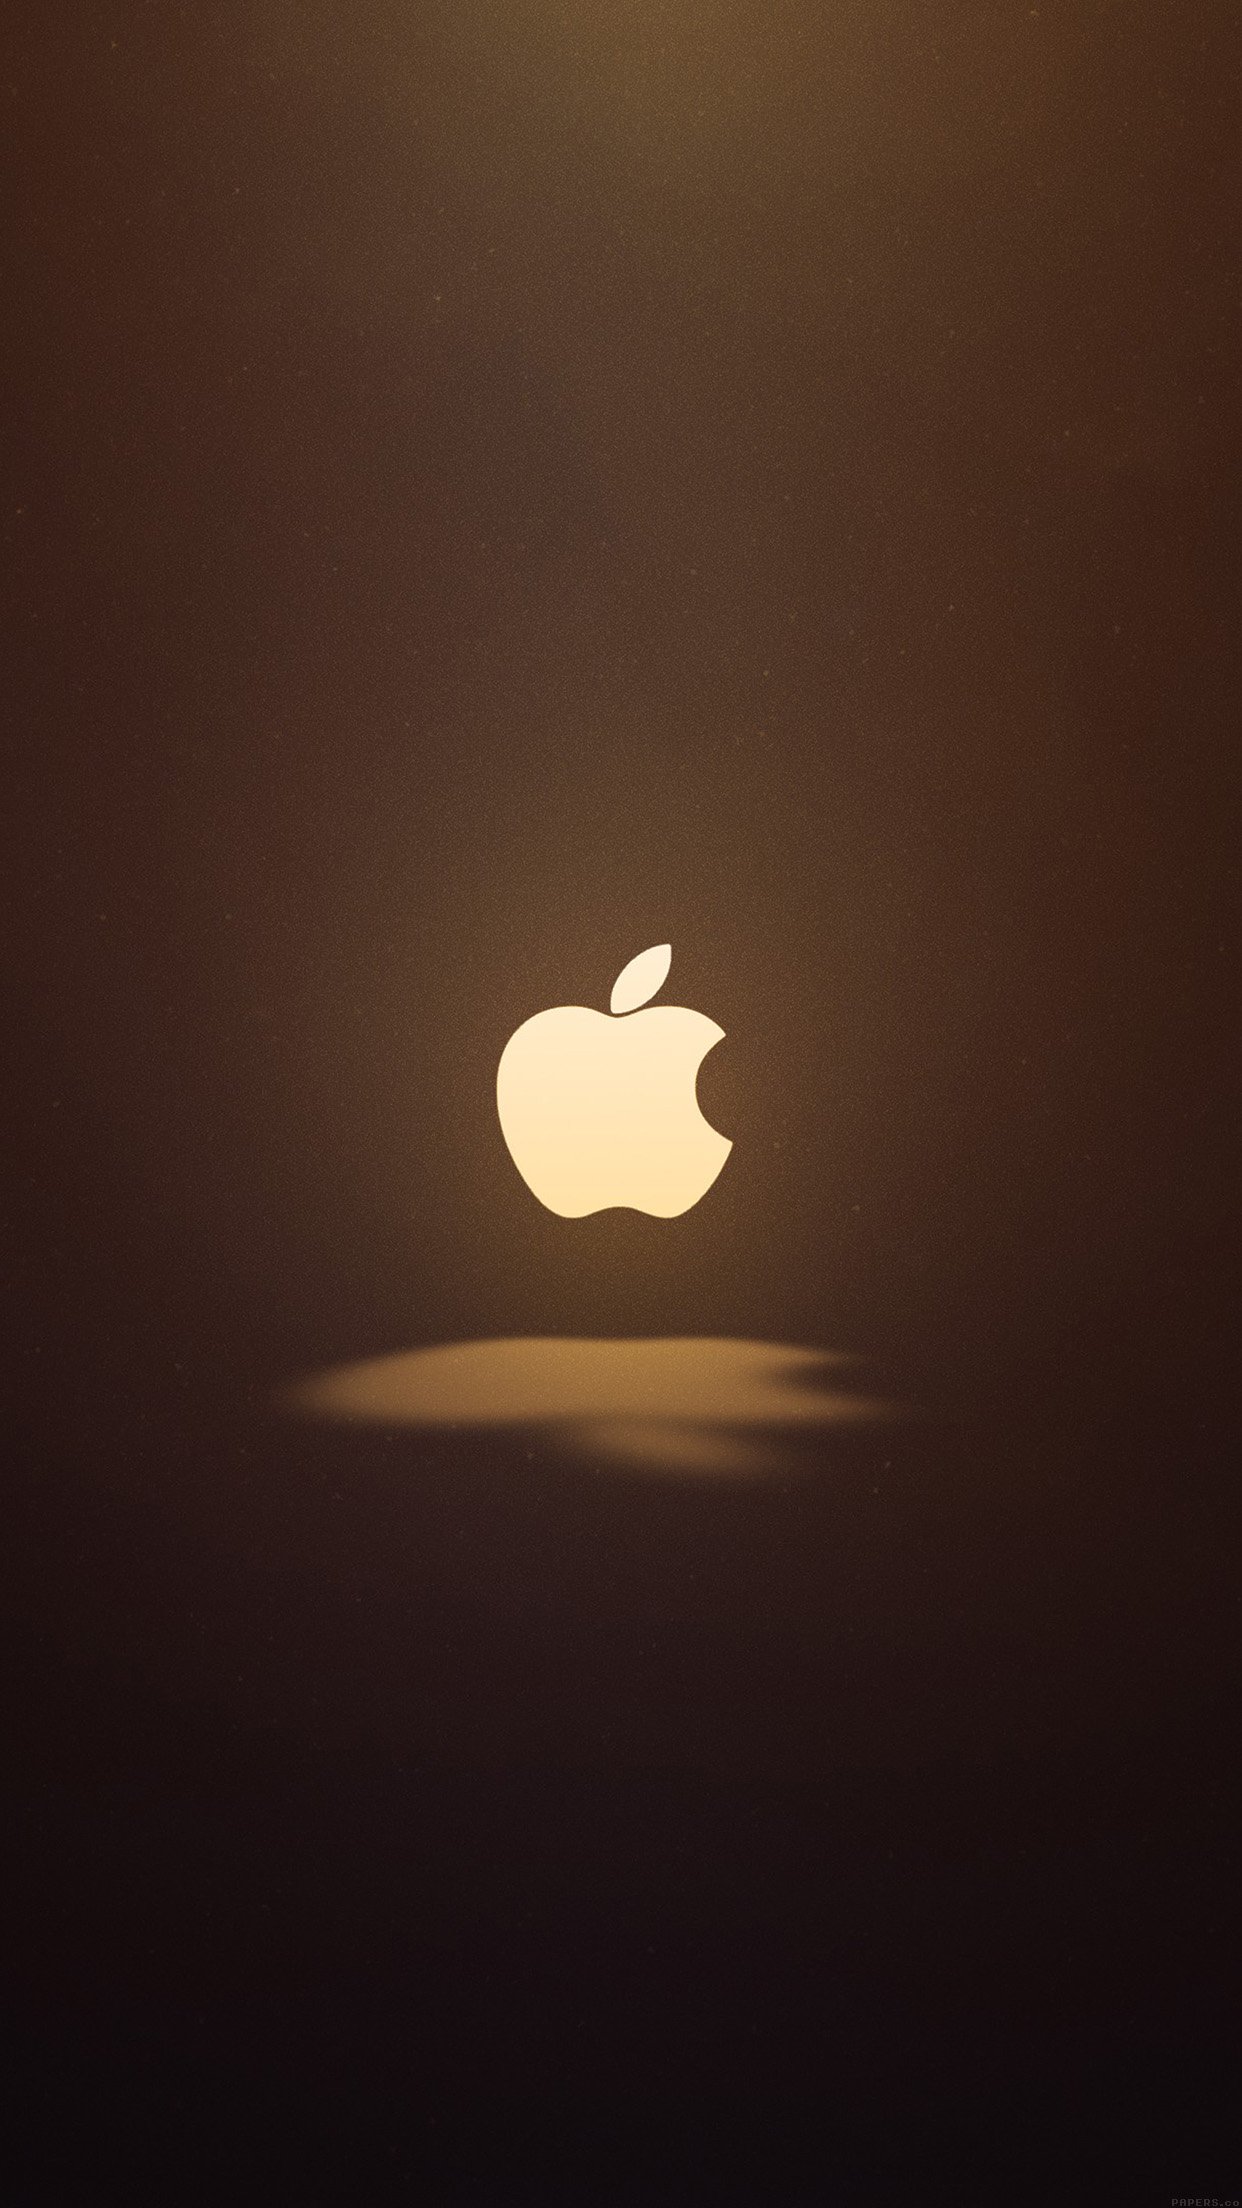 Apple Best , HD Wallpaper & Backgrounds